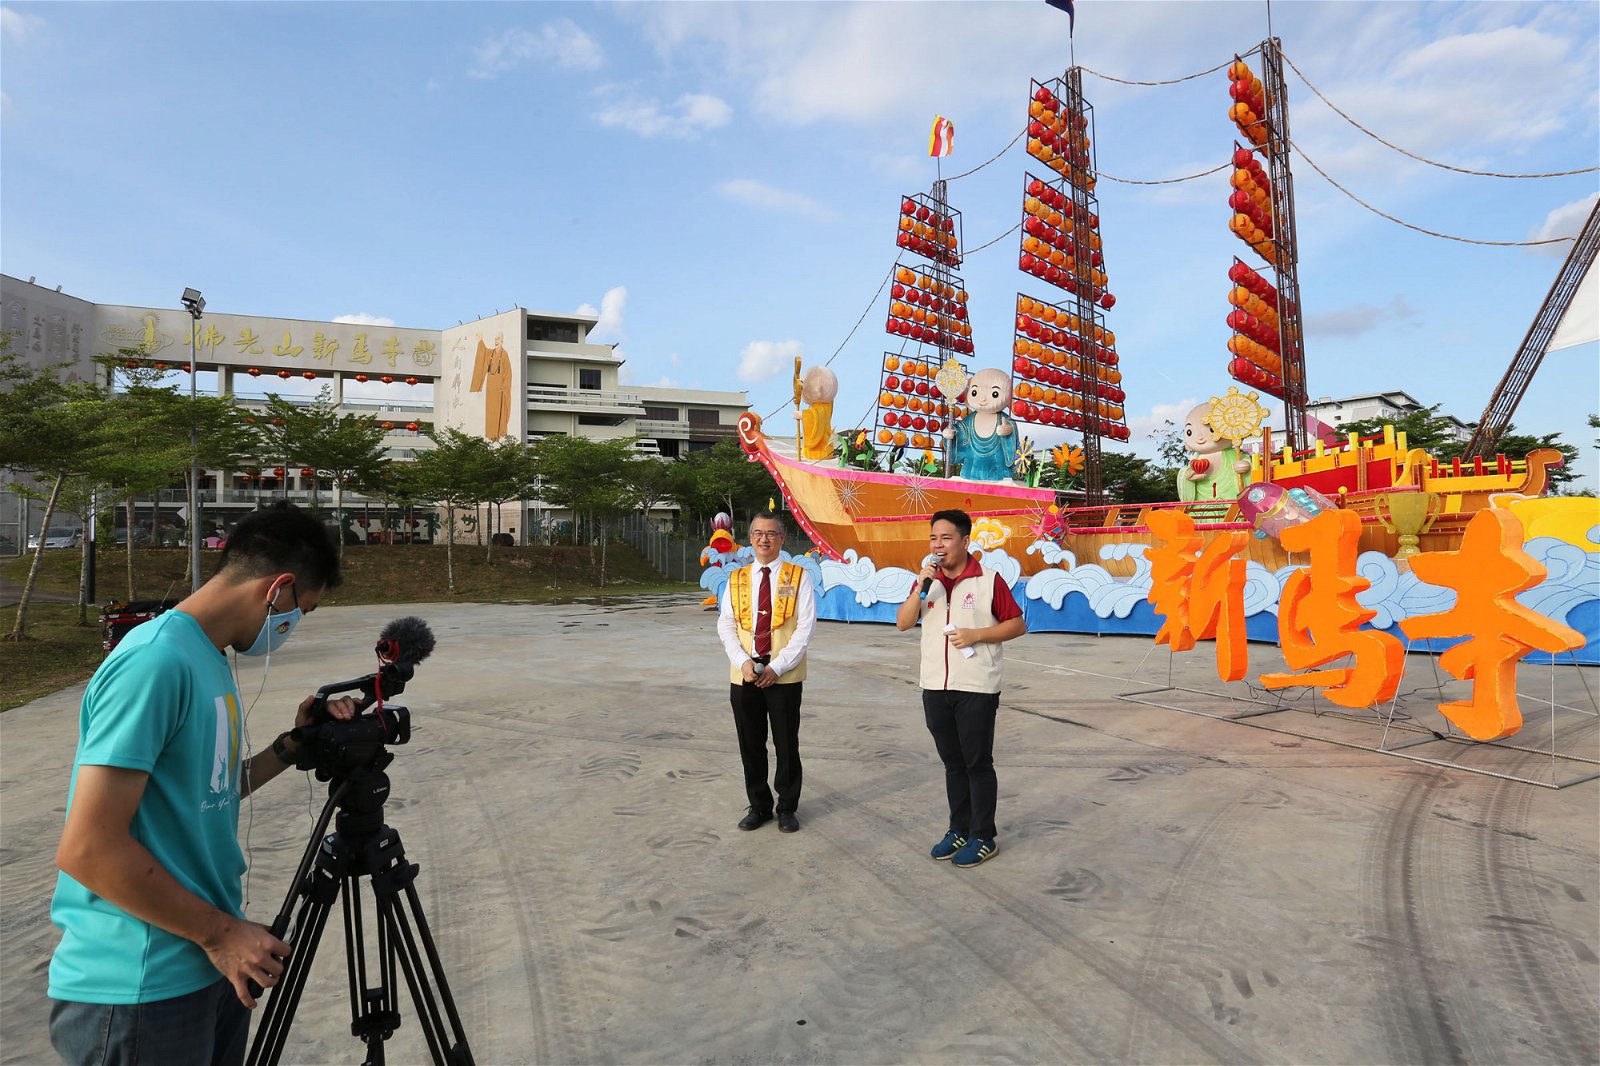 新马寺摄制团队录制影片介绍平安灯会，让无法到场的民众也能线上欣赏。摄影：刘维杰